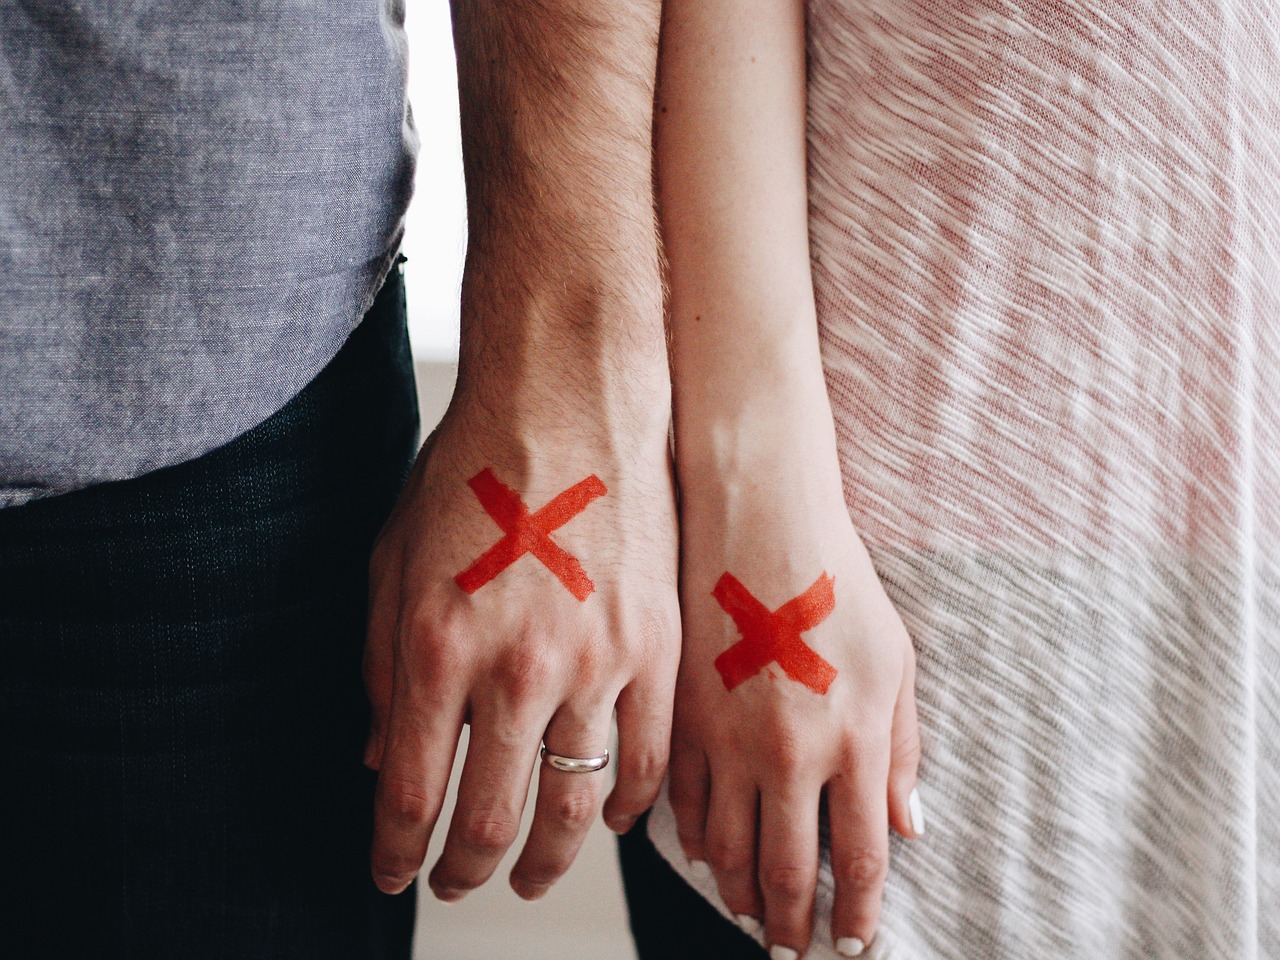 As 6 atitudes que afastam o casal. Foto: Free-Photos/Pixabay